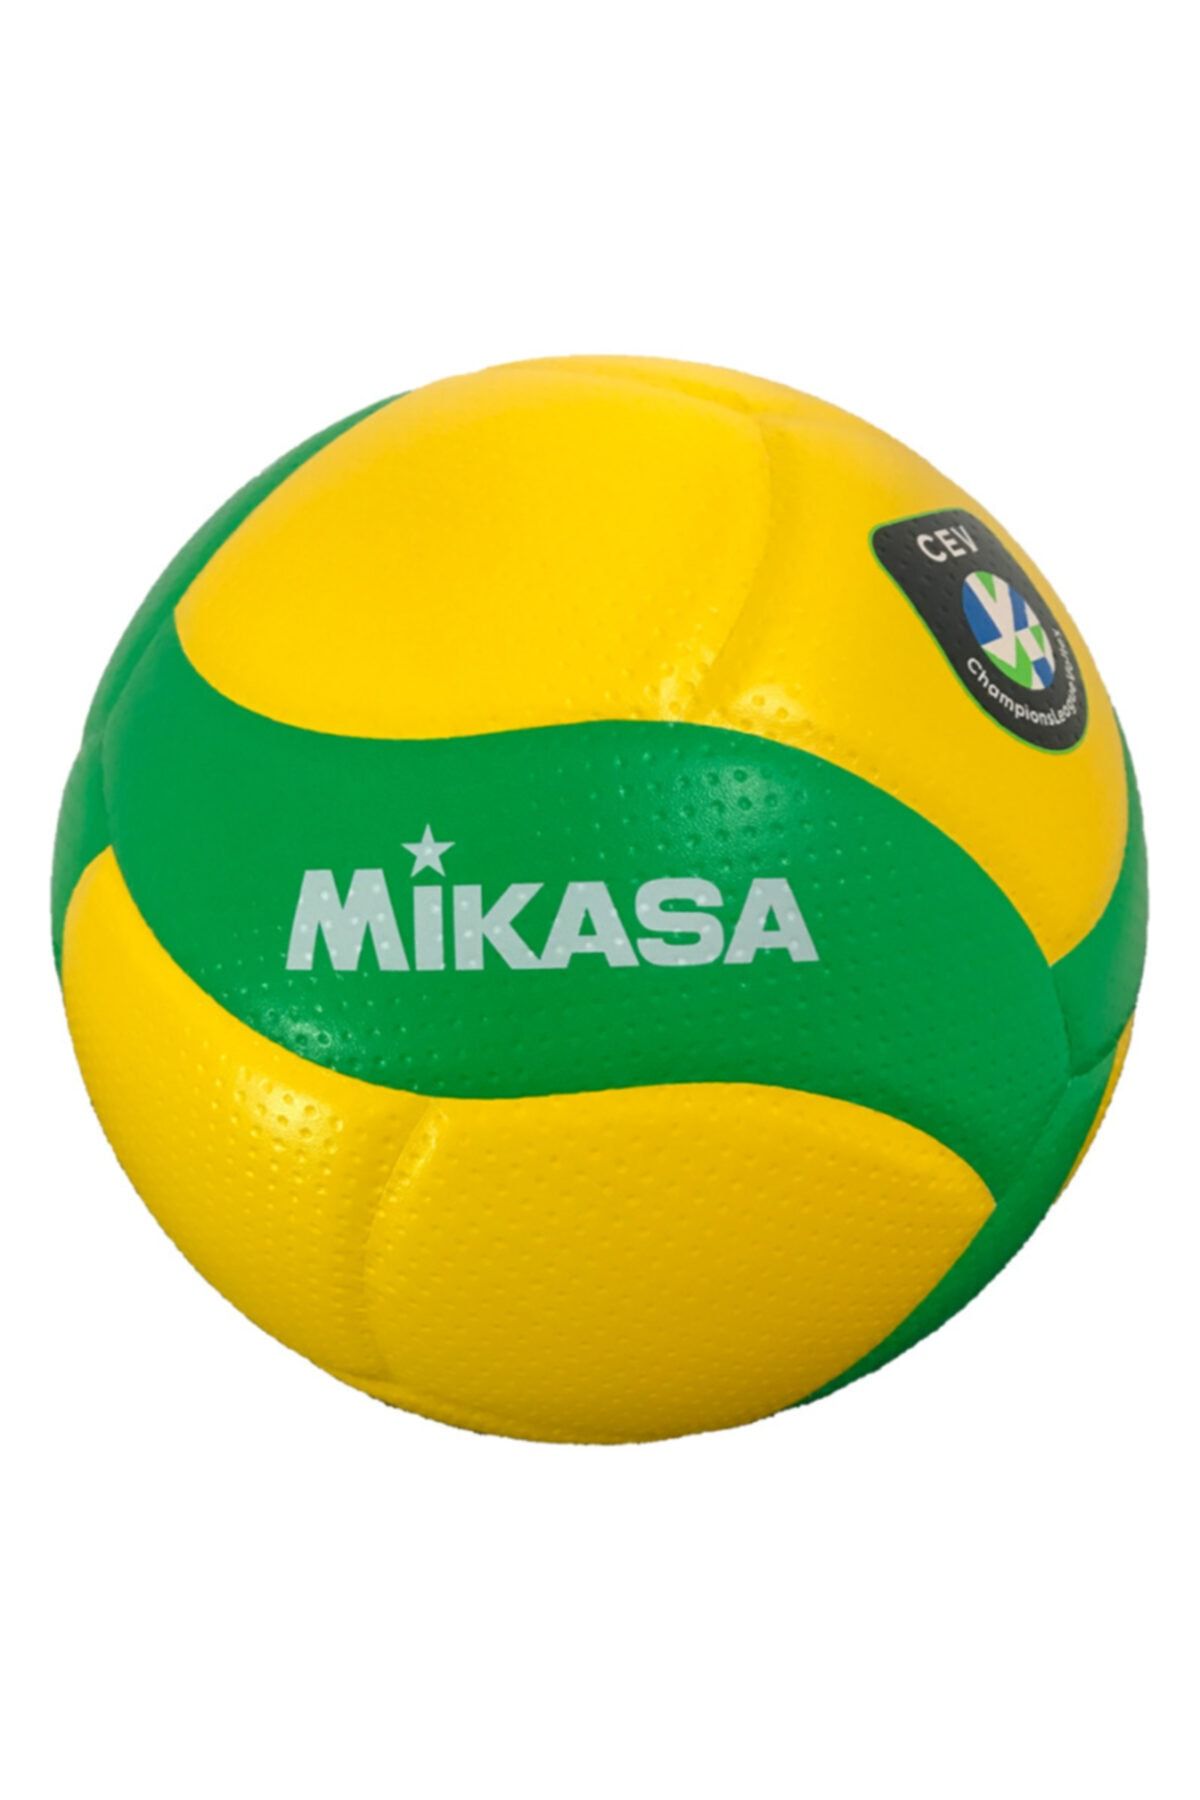 MIKASA Super Composite Şampiyonlar Ligi Voleybol Topu  V200w-cev